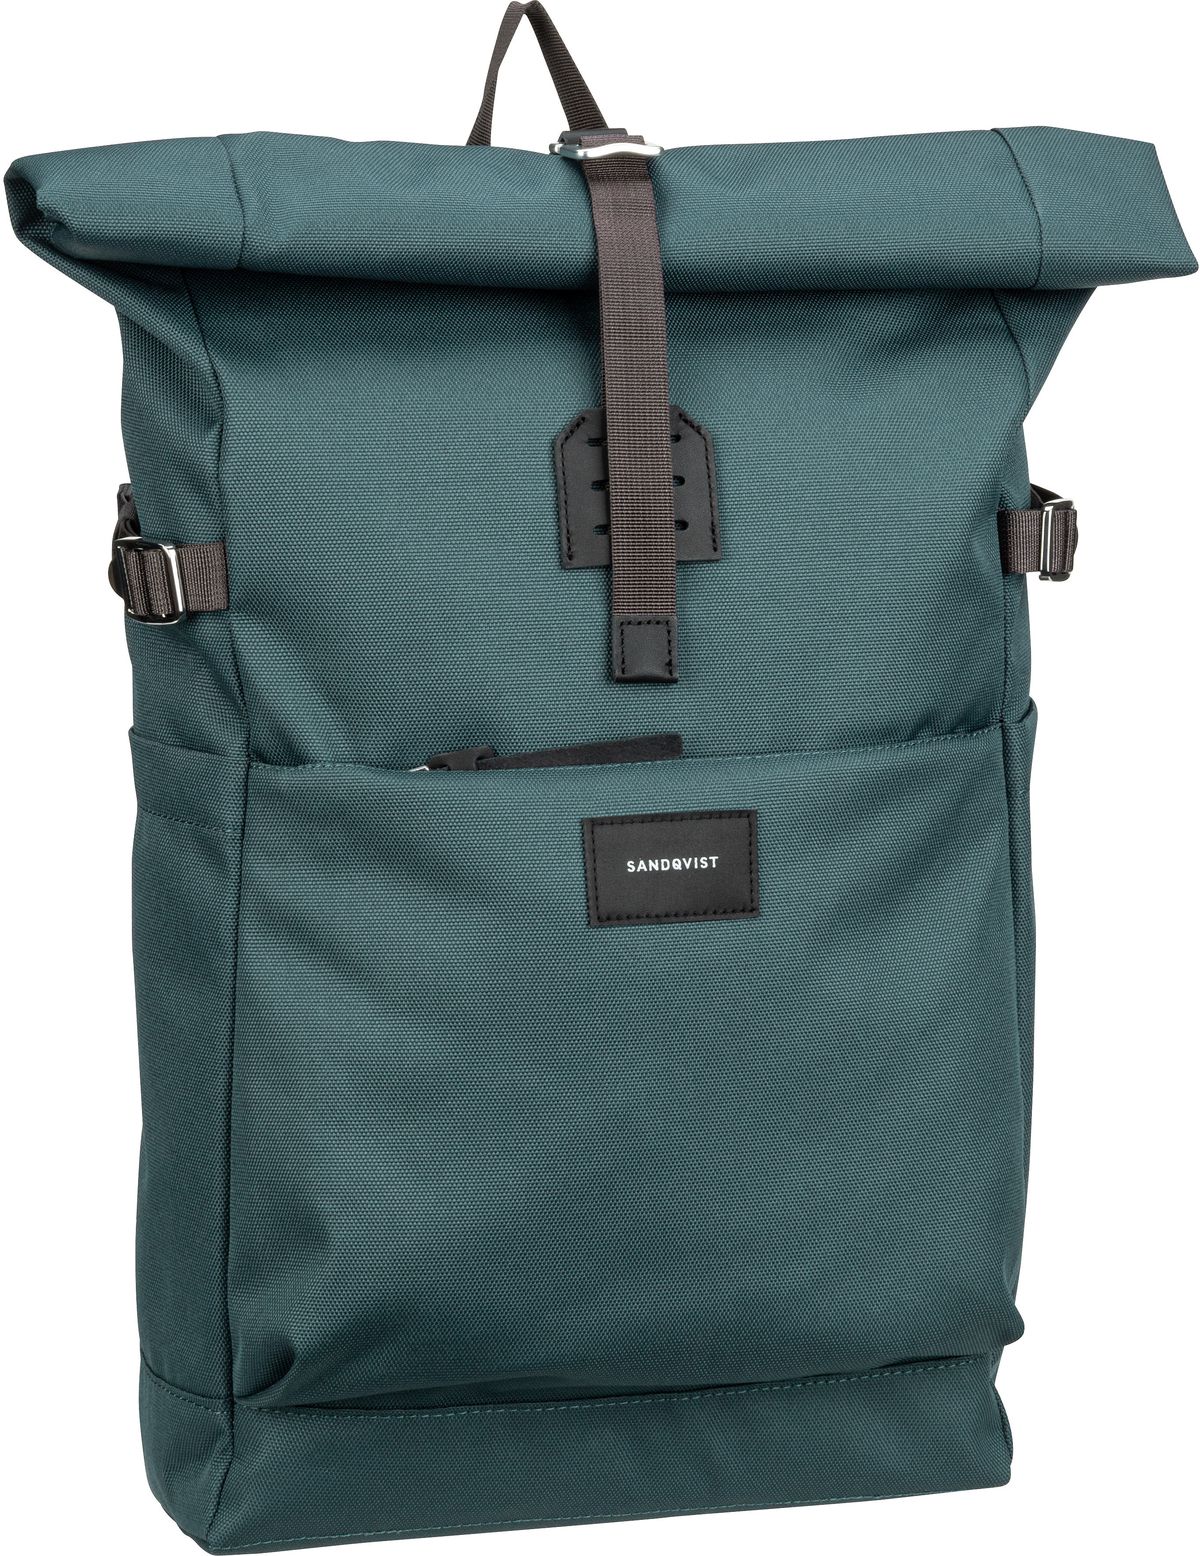 Sandqvist Ilon Rolltop Backpack  in Steel Blue (11.5 Liter), Rucksack / Backpack